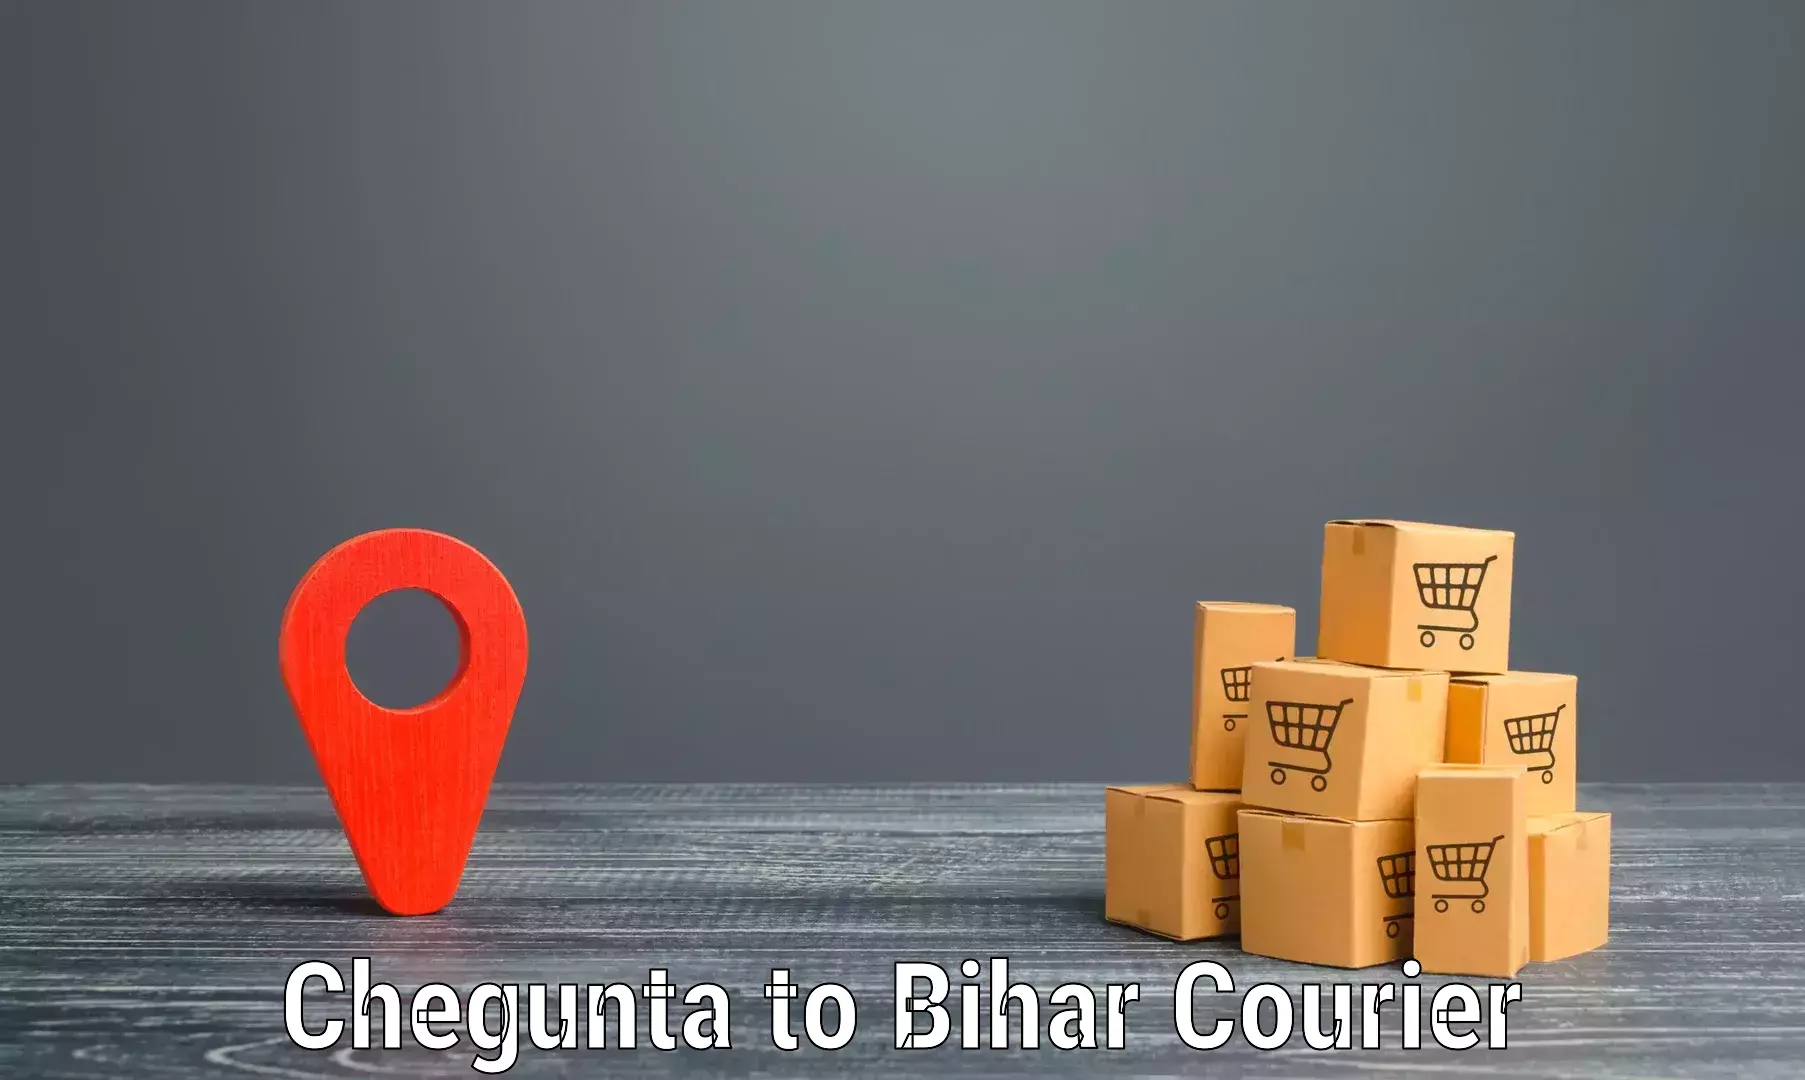 Local delivery service Chegunta to Bikramganj